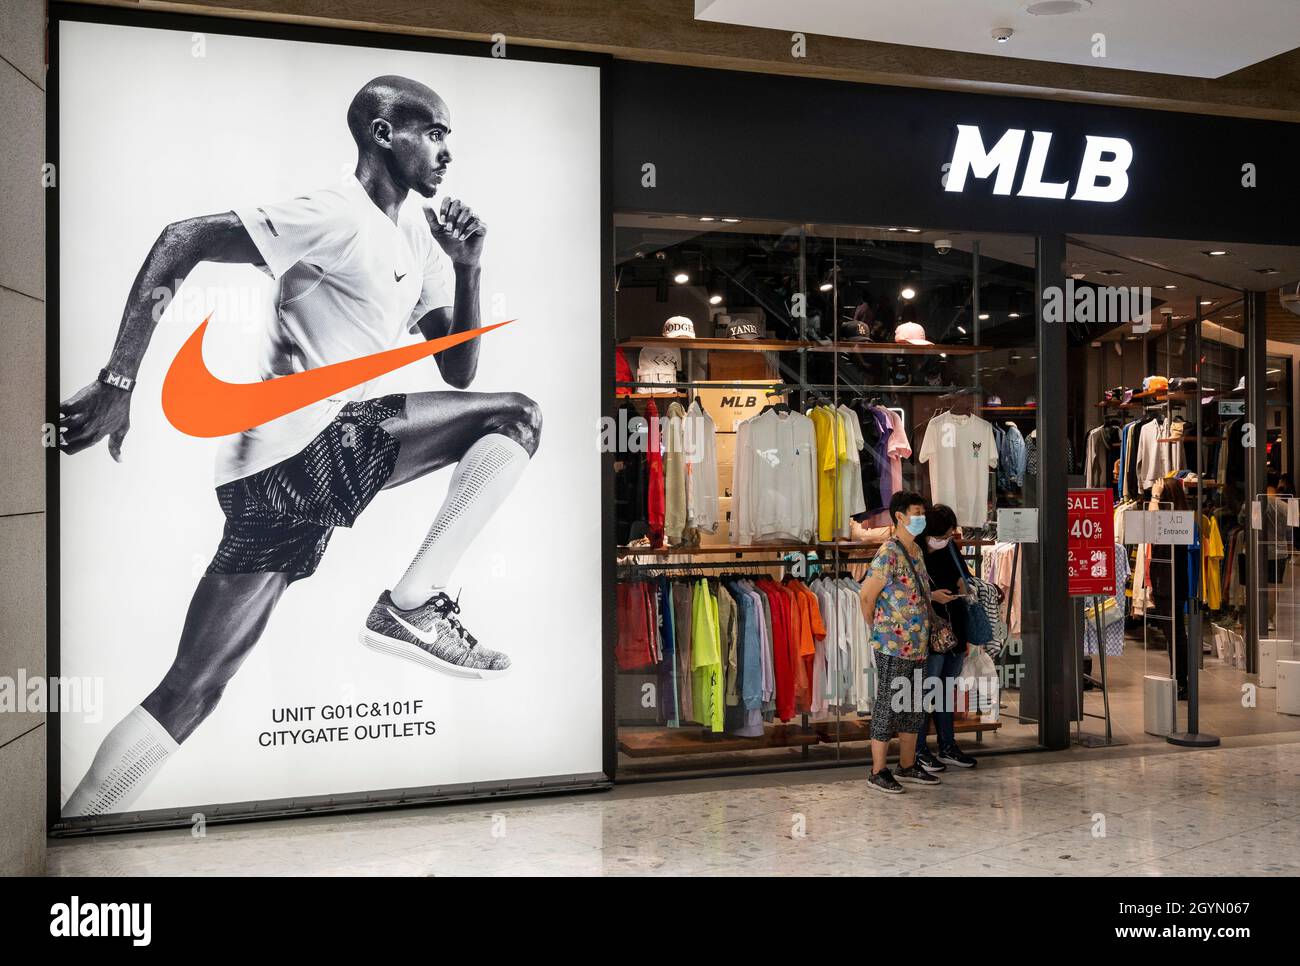 La marca de deportiva multinacional americana Nike y la organización profesional de béisbol, las tiendas de las Grandes Ligas de Béisbol (MLB) en Hong Kong. (Foto de Budrul Chukrut / SOPA